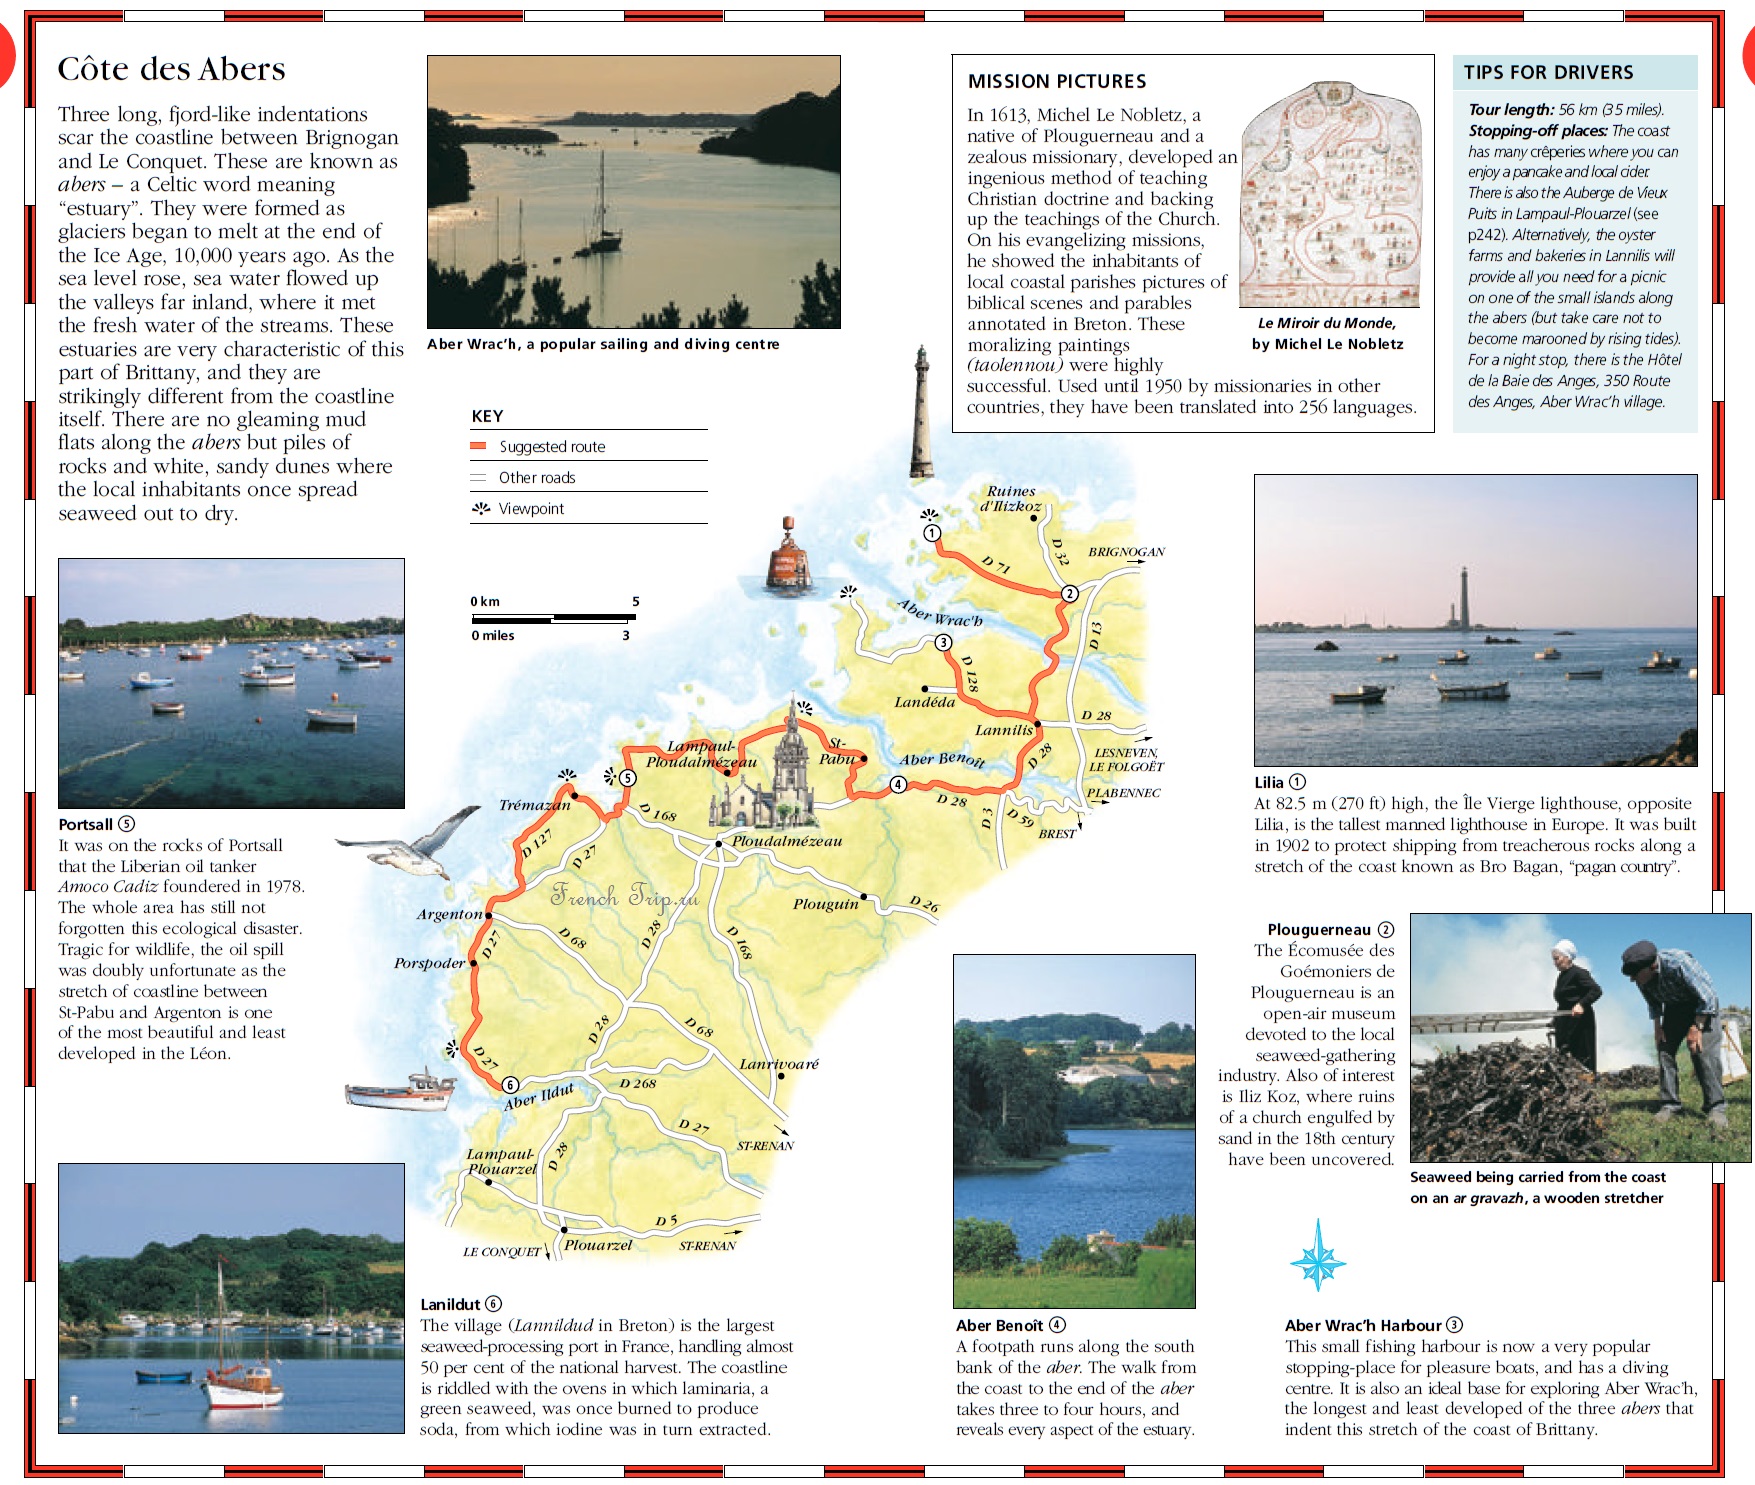 Côte des Abers - достопримечательности, маршрут по берегу Бретани. Туристические маршруты по Бретани, путеводитель по Бретани и Франции, что посмотреть в Бретани, Бретань, Бретань Франция, Бретань достопримечательности